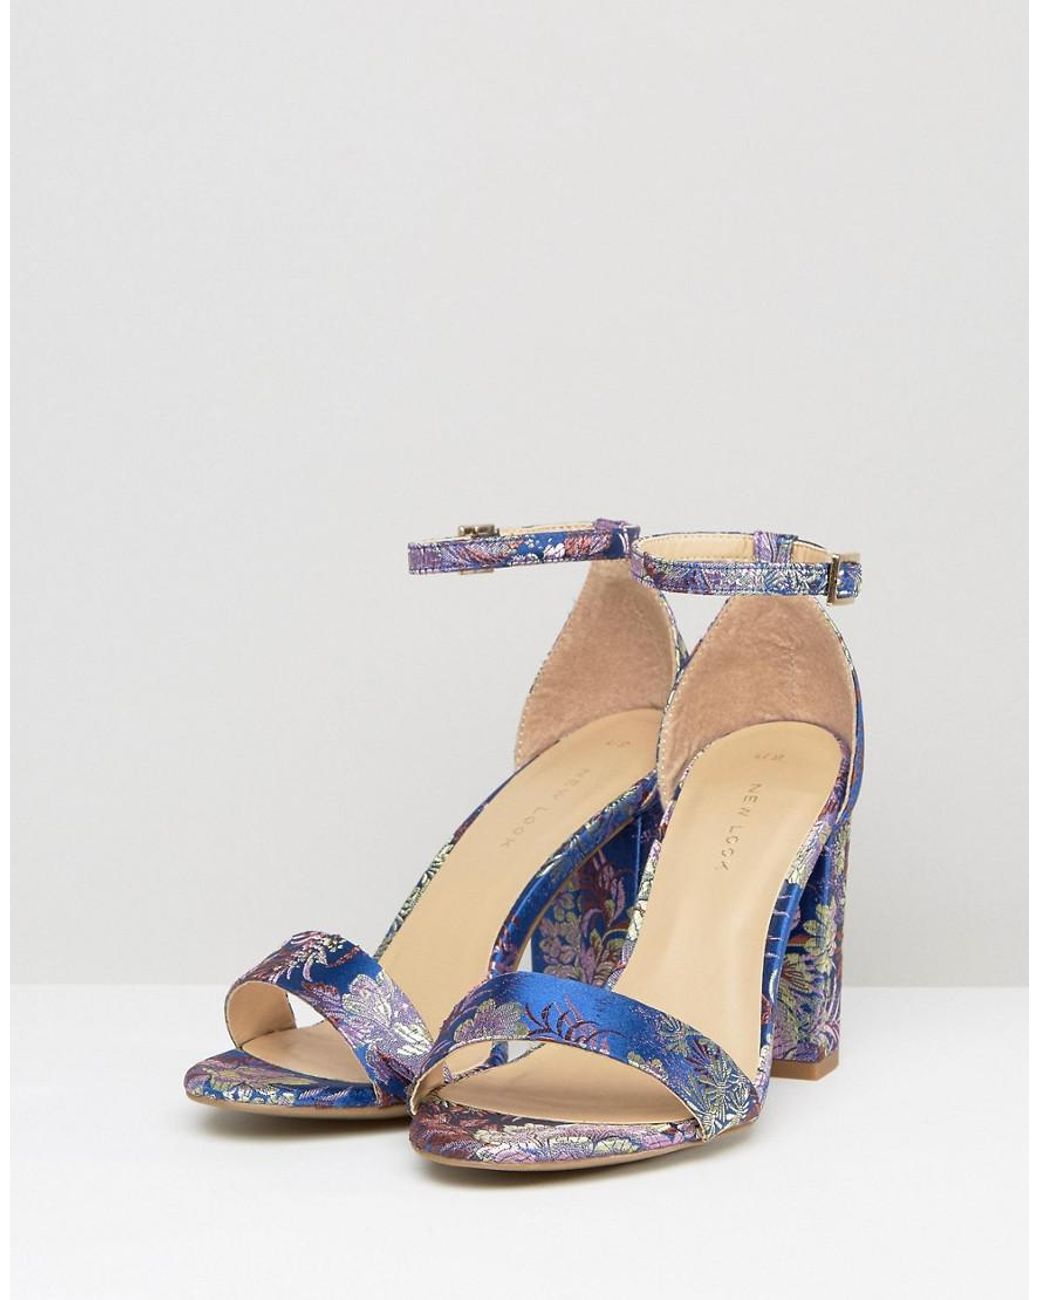 Spring Floral Heel's | Floral heels, Heels, Fashion heels